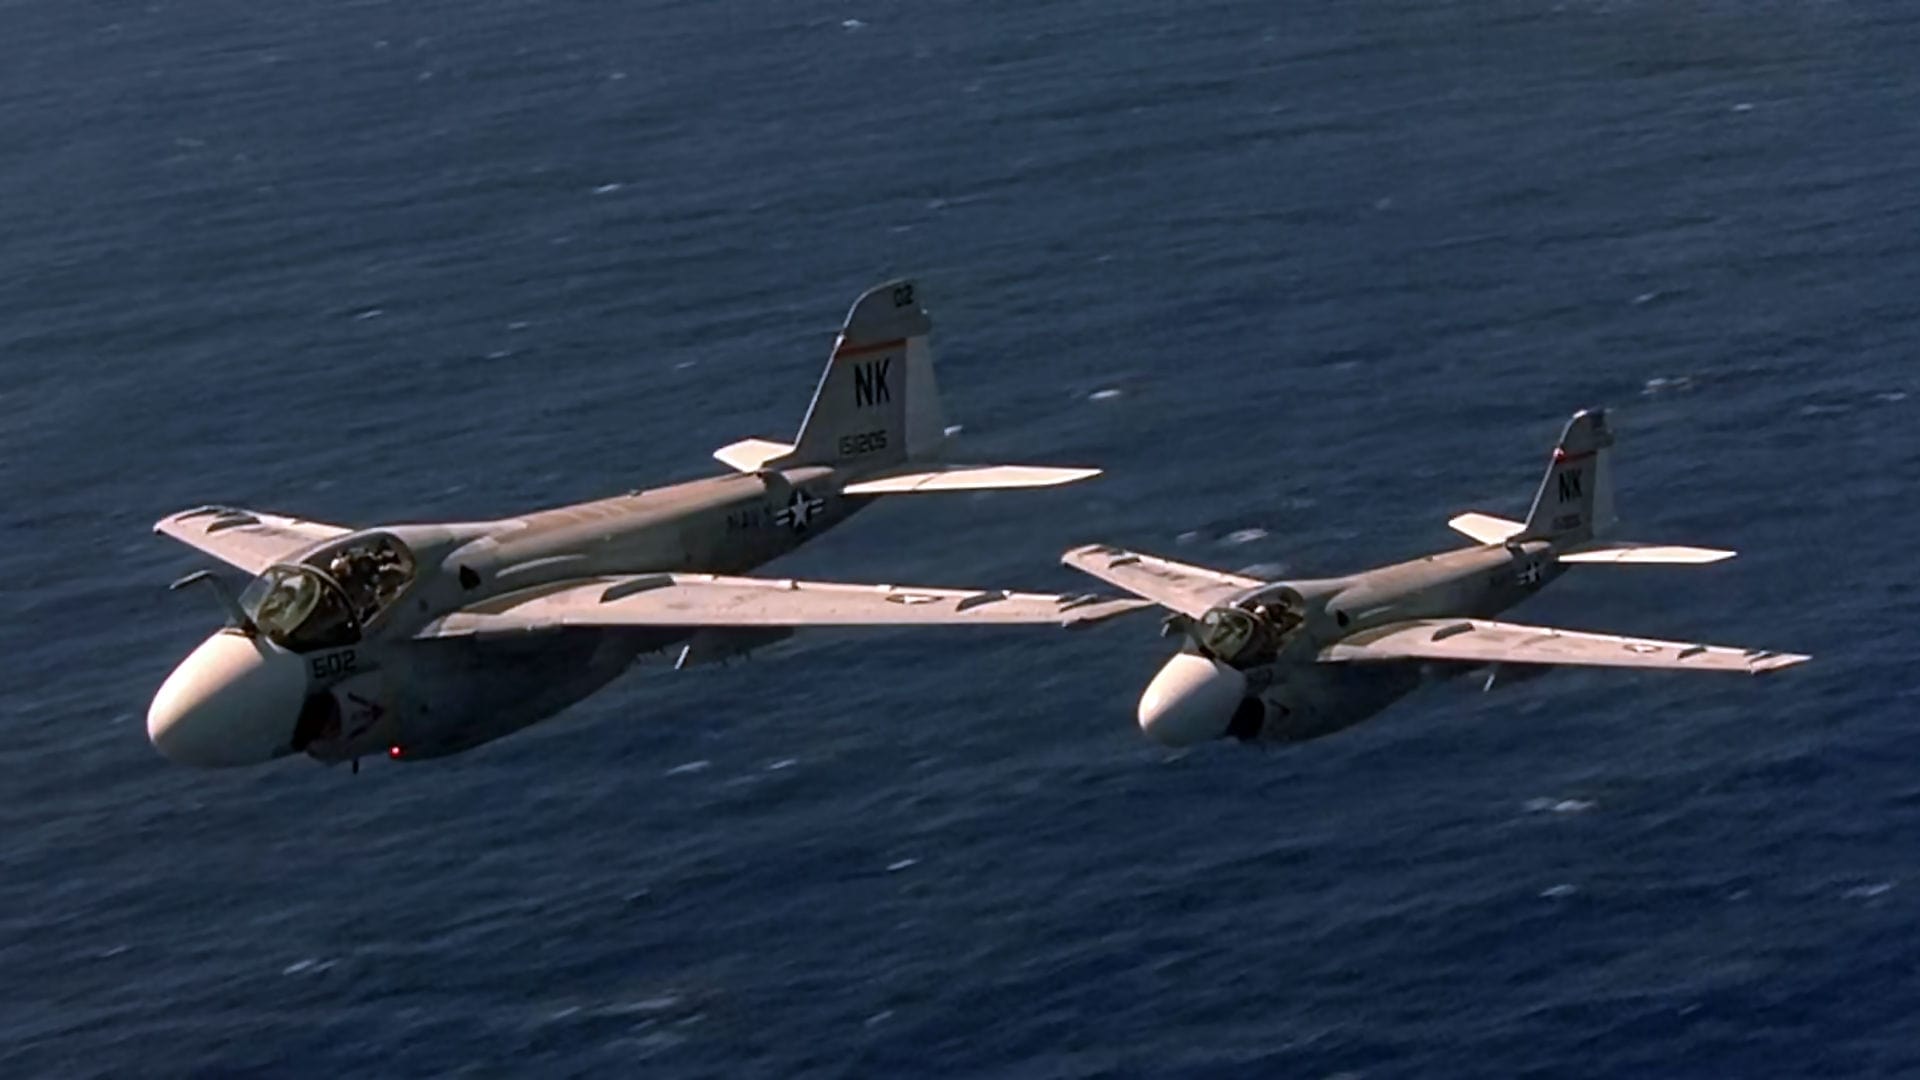 Flight of the Intruder 1991 123movies